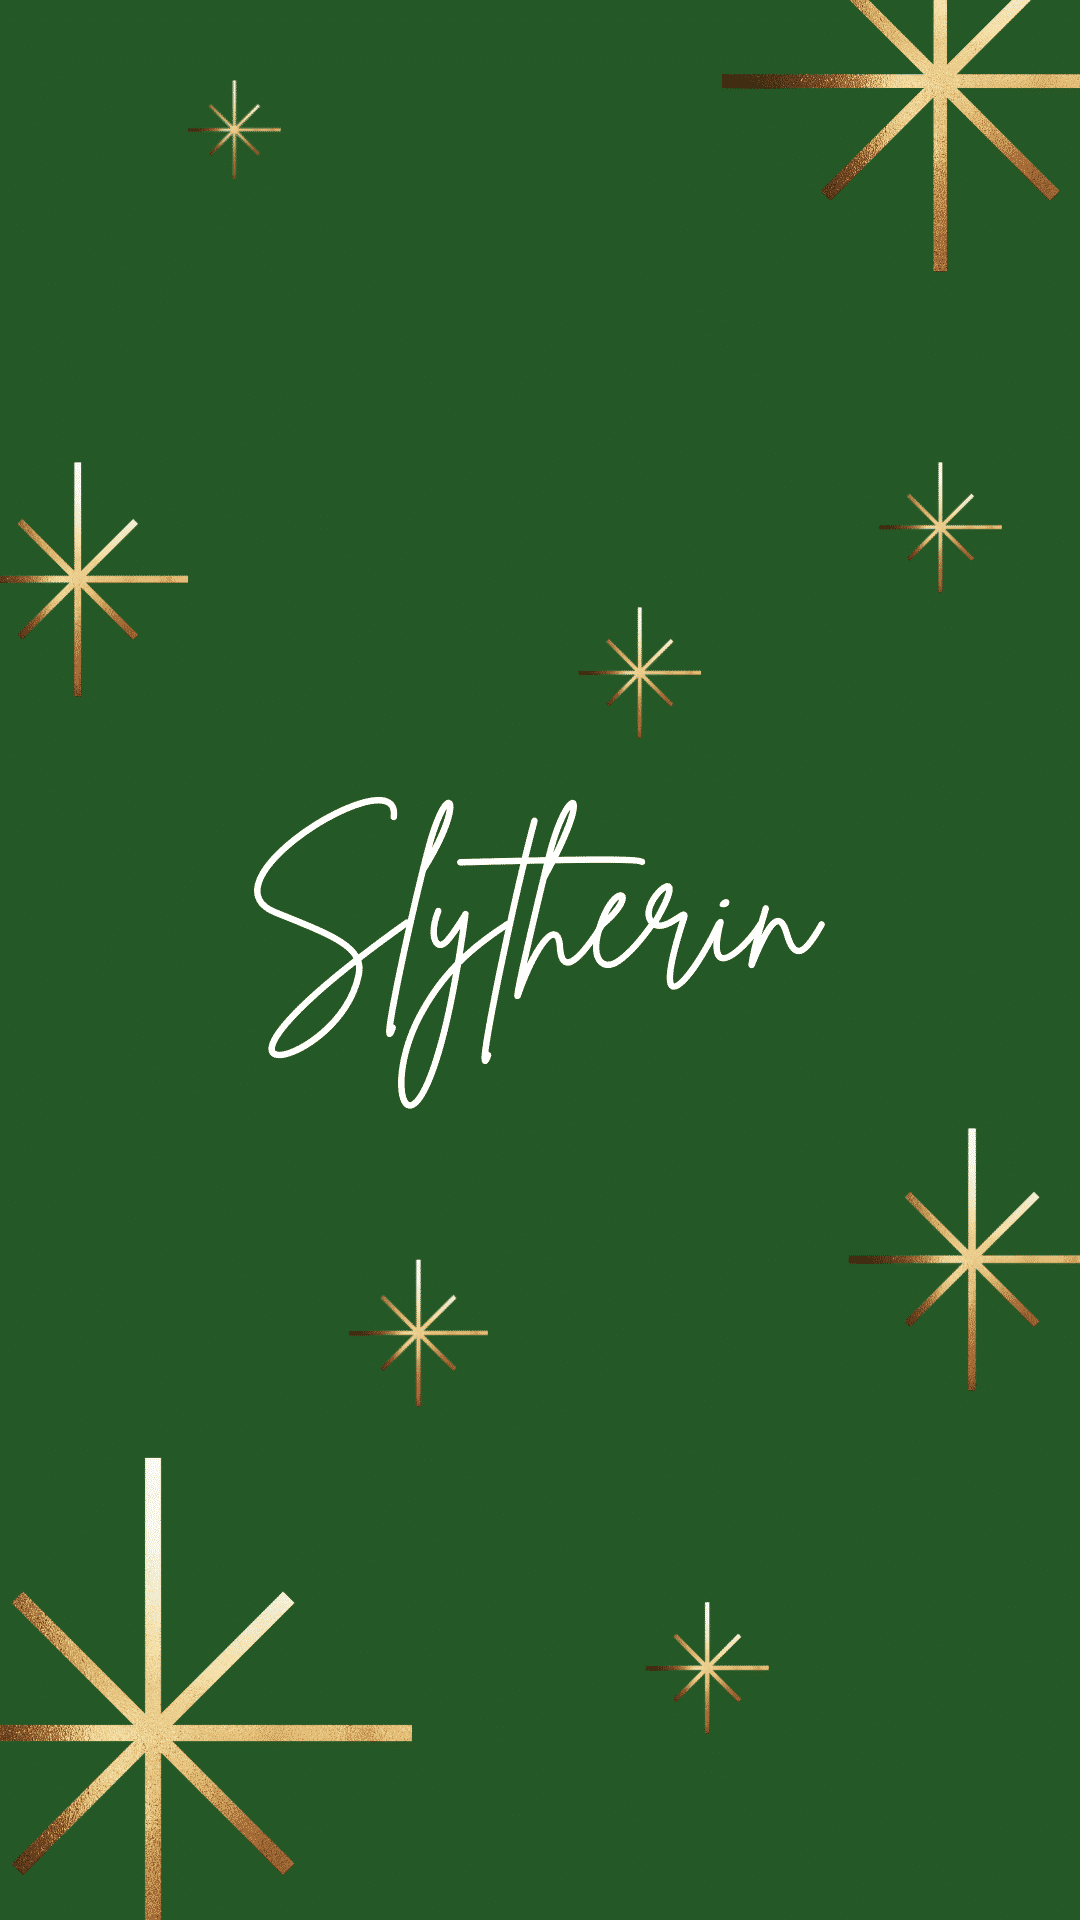 FREE Slytherin Wallpaper & Desktop Image Download